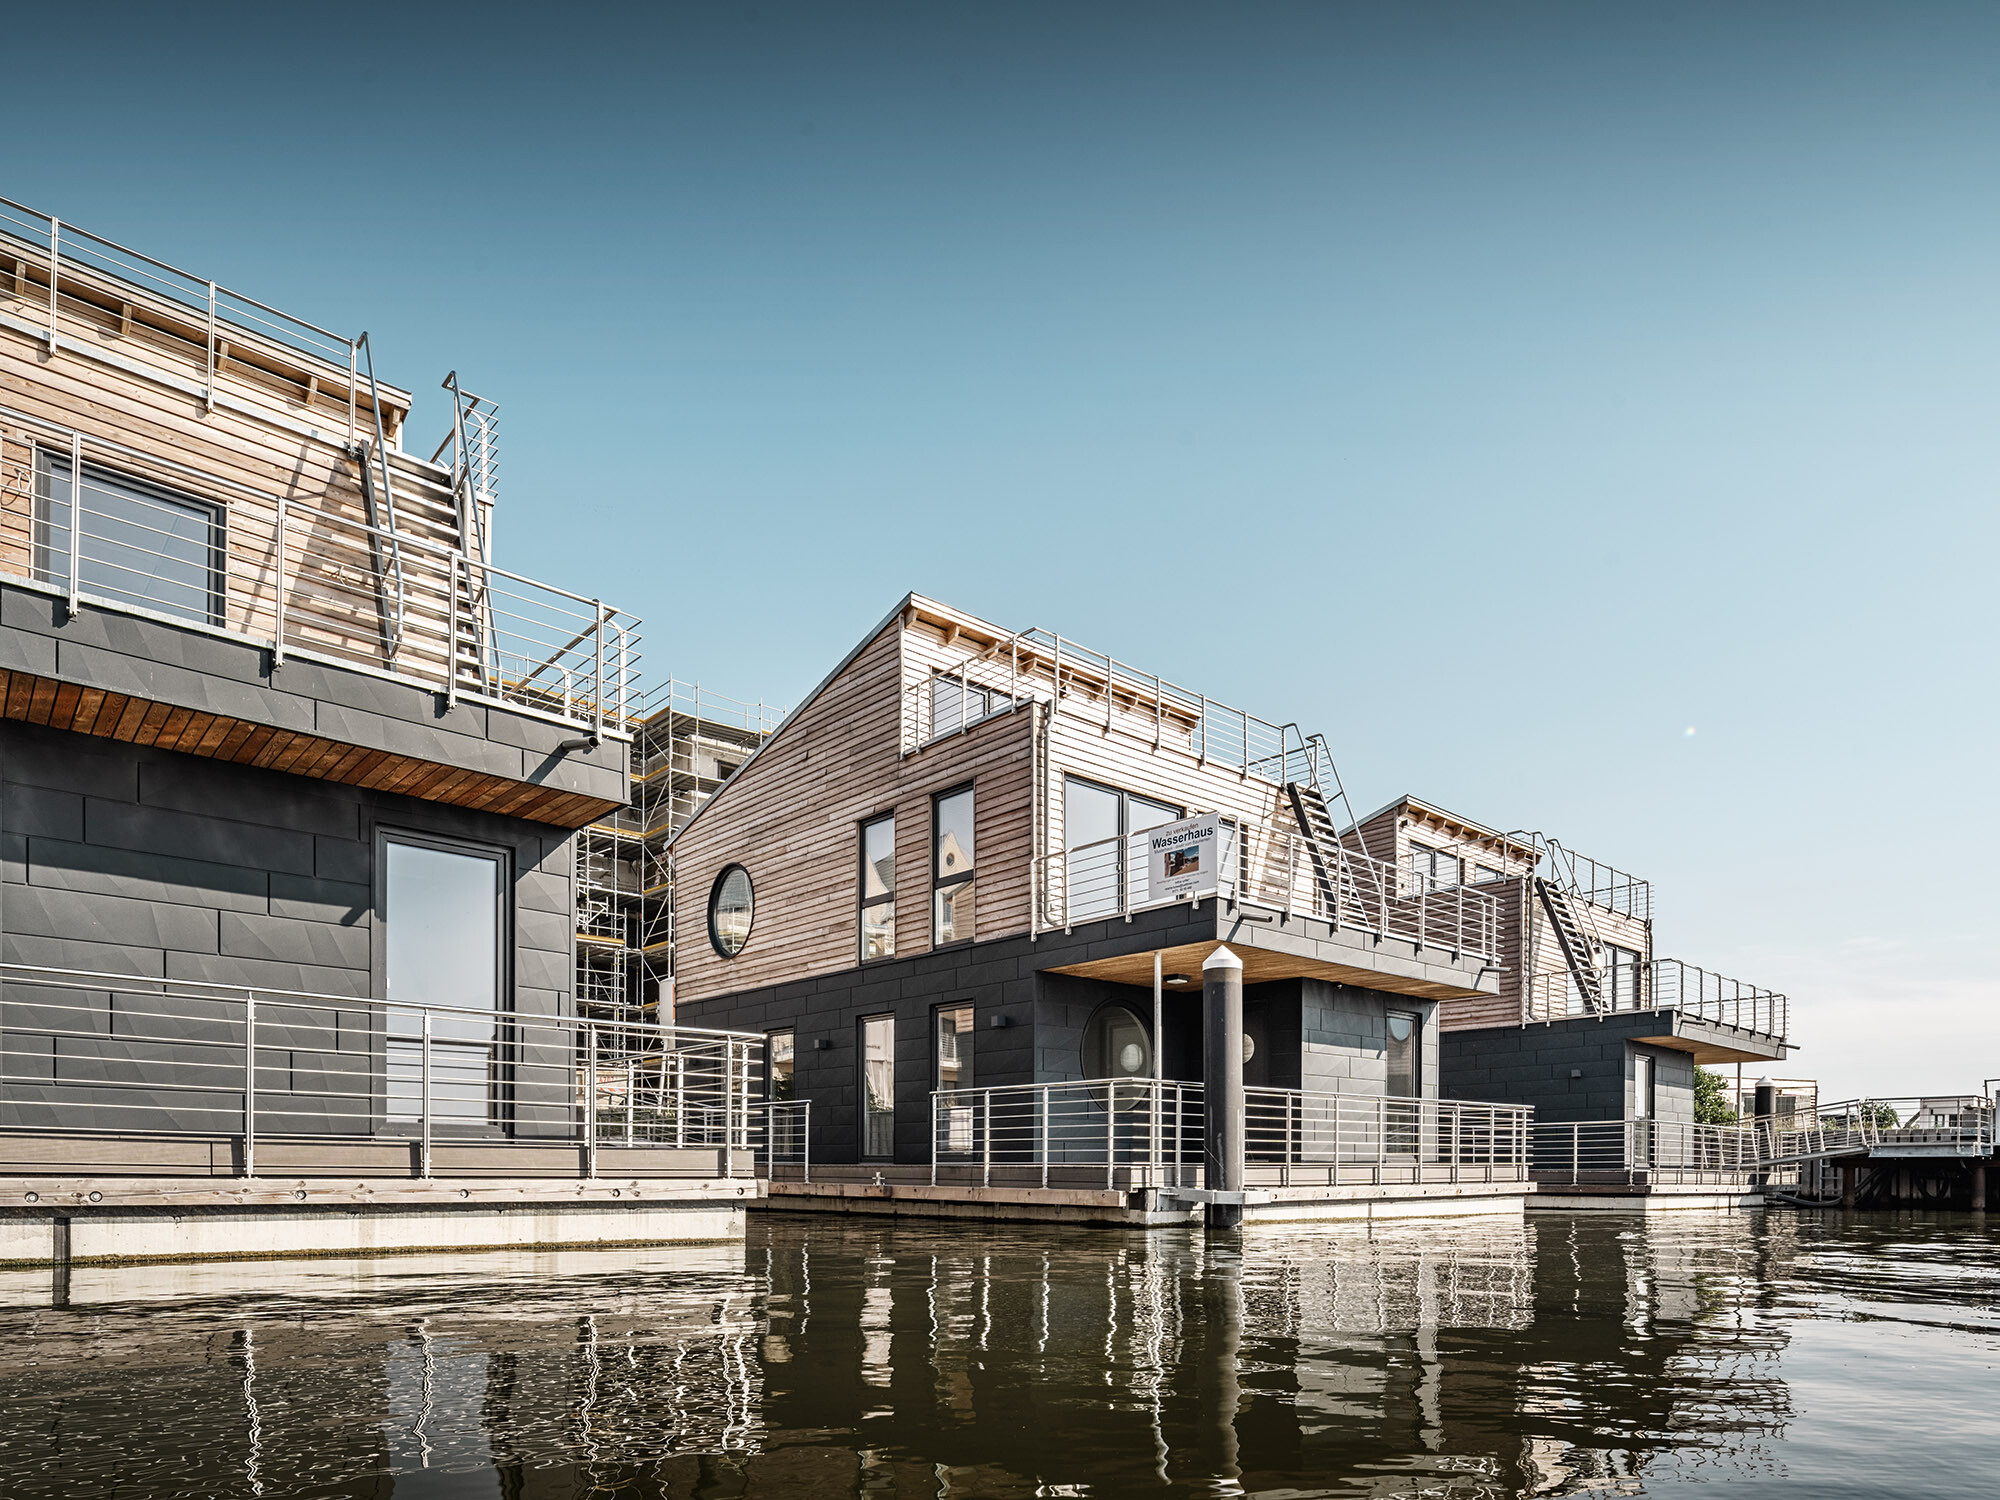 Die Wasserhäuser in Schleswig aus der Froschperspektive; sie sind optisch anhand ihrer Holz- und Aluminiumfassaden unterteilt.